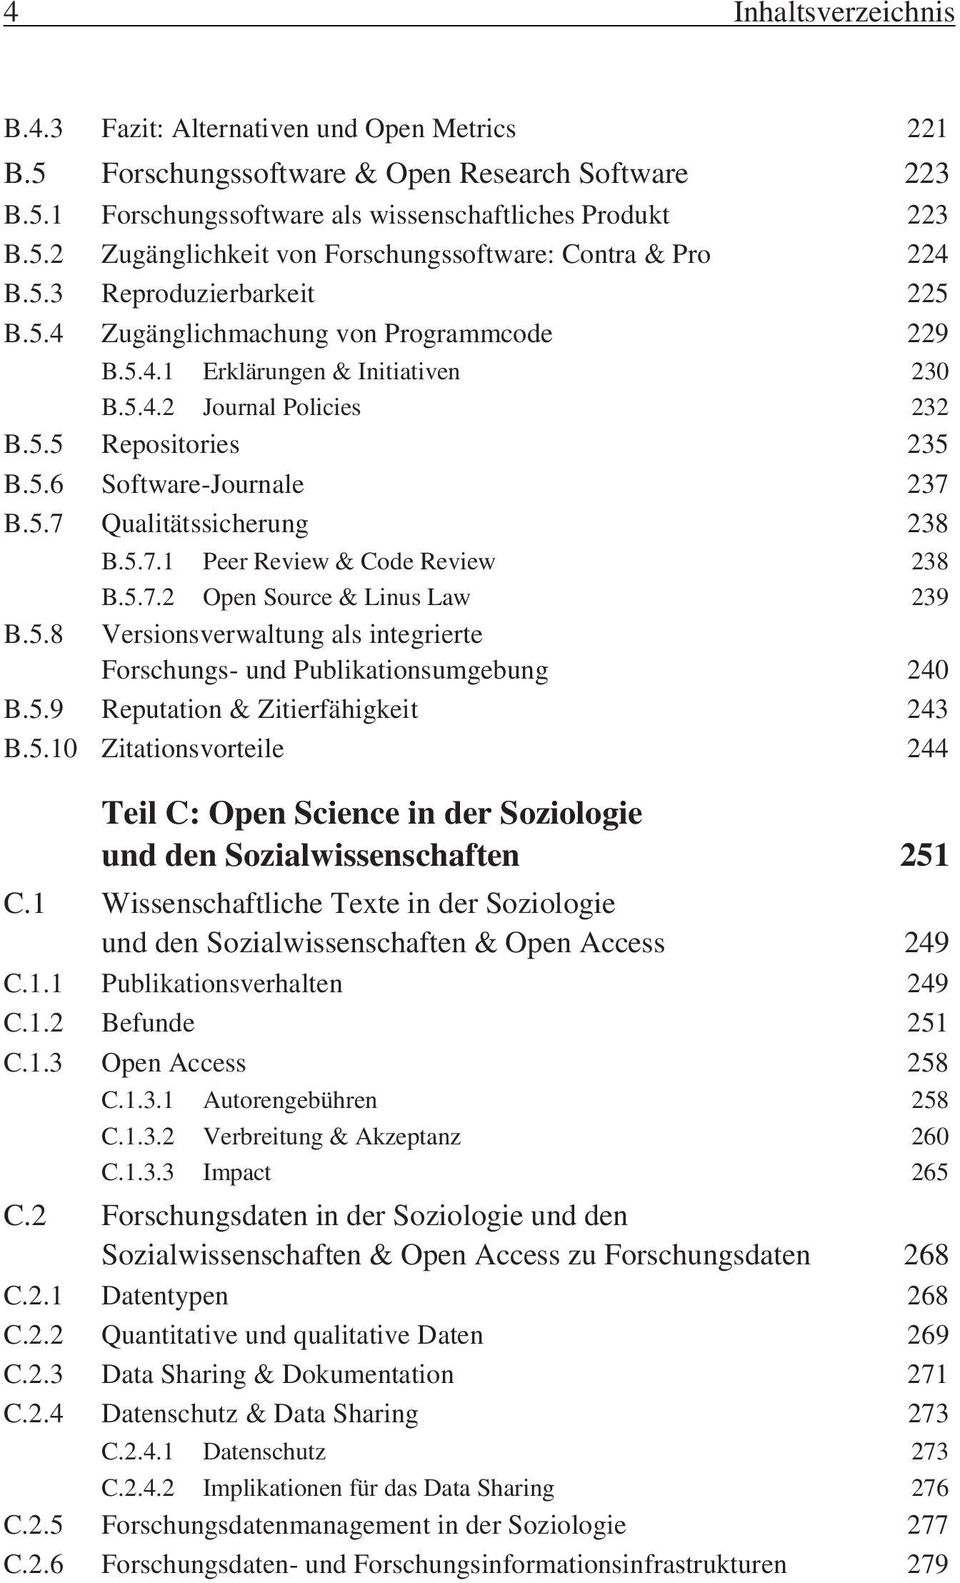 5.7.1 Peer Review & Code Review 238 B.5.7.2 Open Source & Linus Law 239 B.5.8 Versionsverwaltung als integrierte Forschungs- und Publikationsumgebung 240 B.5.9 Reputation & Zitierfähigkeit 243 B.5.10 Zitationsvorteile 244 Teil C: Open Science in der Soziologie und den Sozialwissenschaften 251 C.